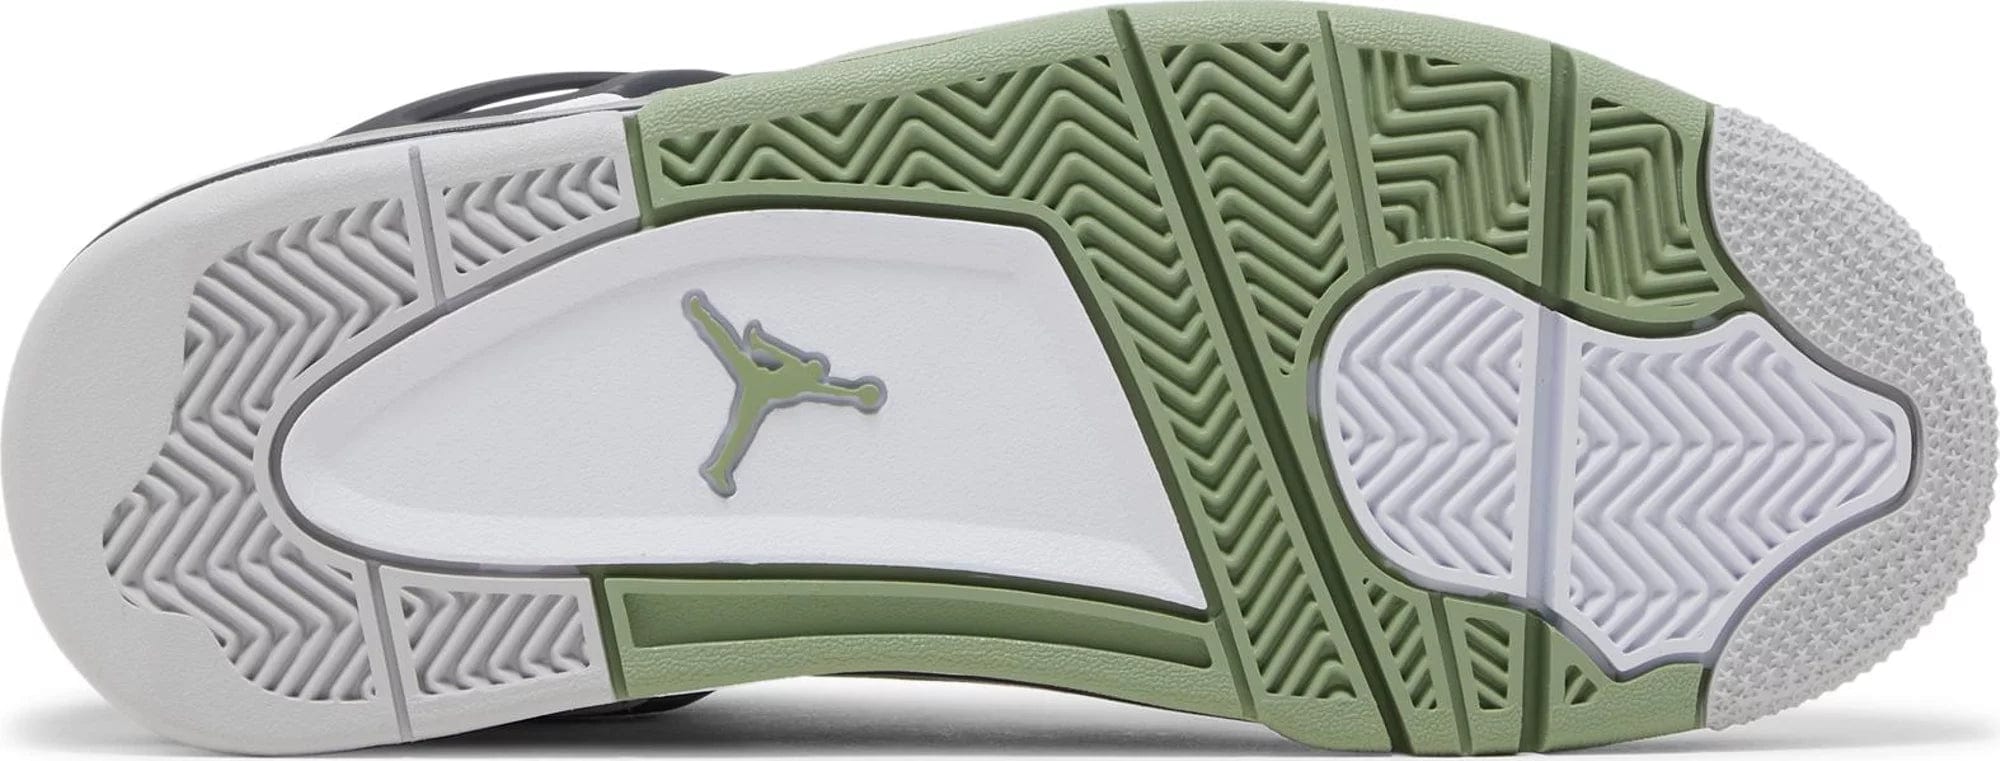 sneakers Nike Air Jordan 4 Retro Seafoam Women's